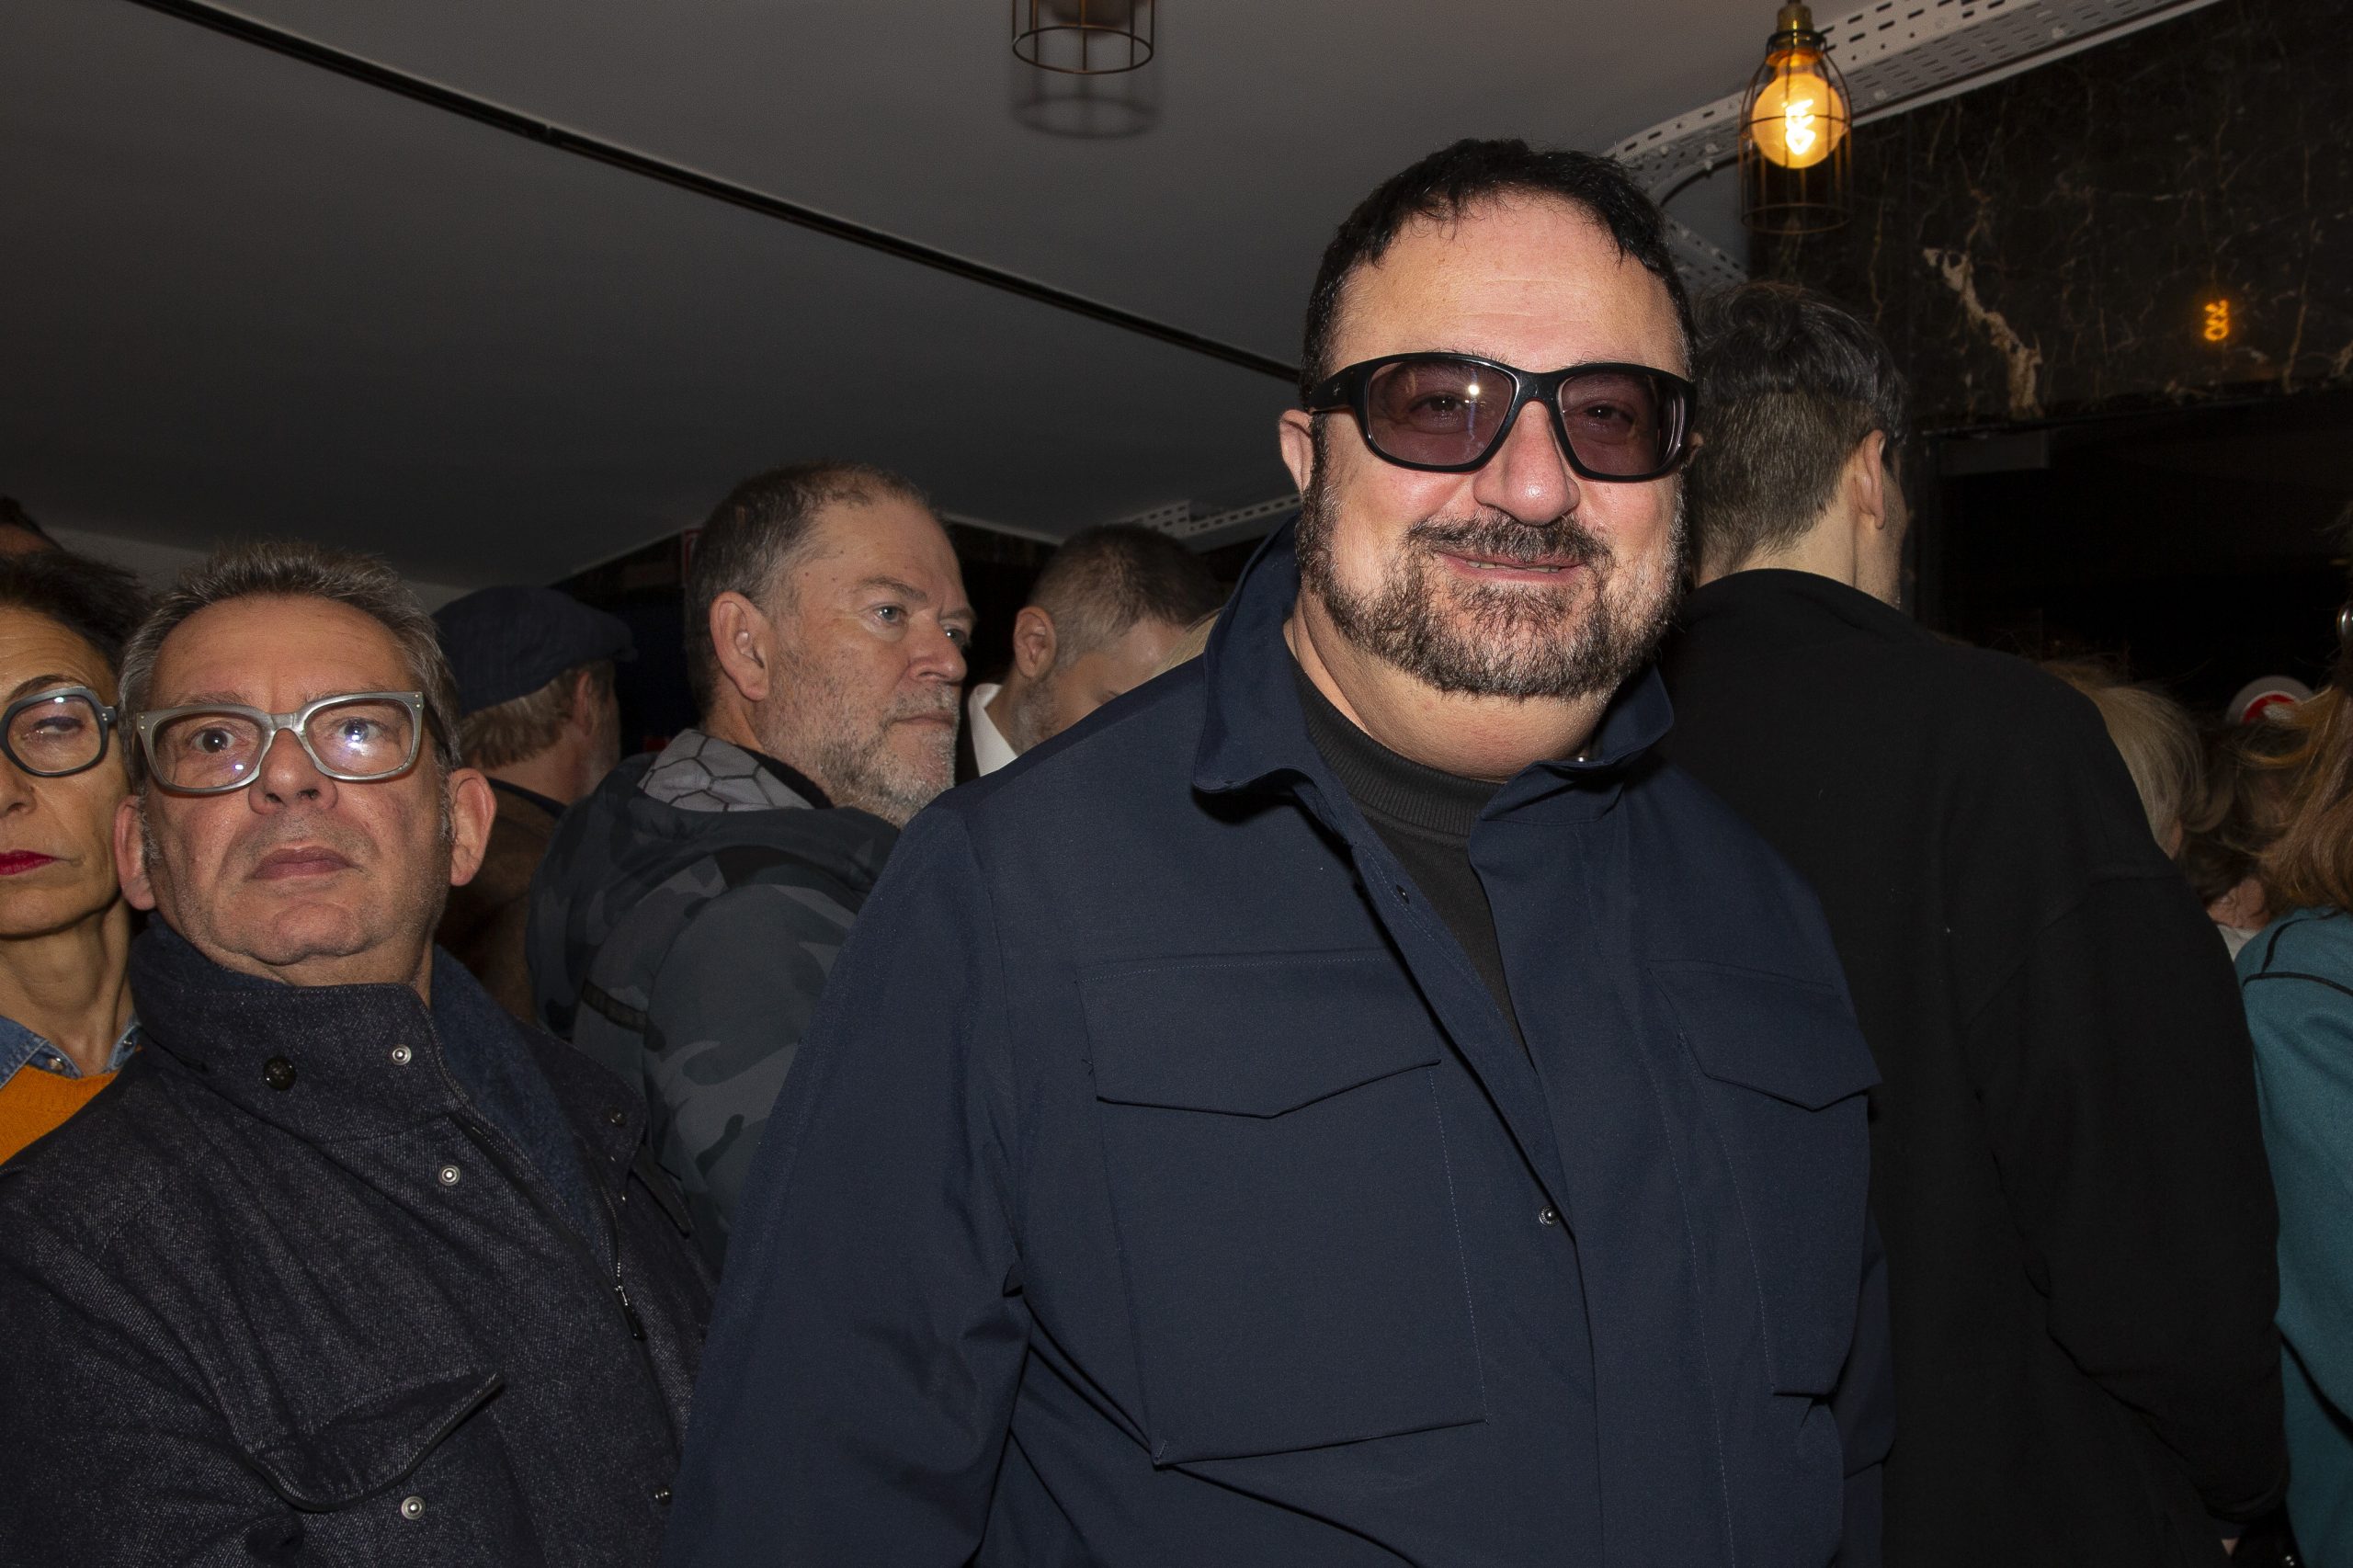 Éric Dahan dans les couloirs du cinéma, il est entouré par des membres du public et il porte des lunettes de soleil.